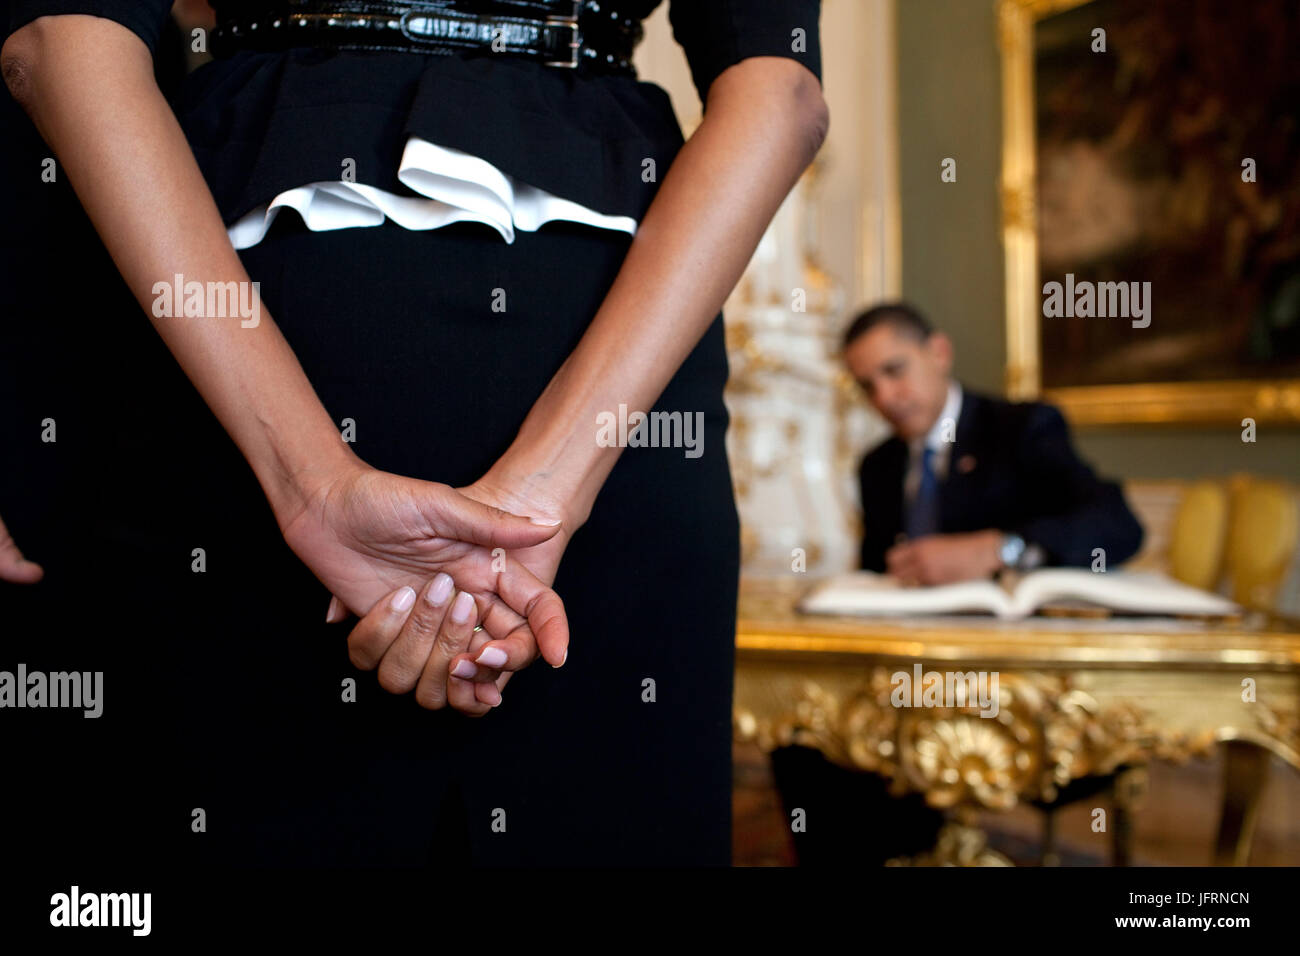 La Première Dame Michelle Obama attend que le président Barack Obama, l'arrière-plan, signe le livre d'or à leur arrivée au château de Prague, le 5 avril 2009, dans la République tchèque. White House Photo/Pete Souza Banque D'Images